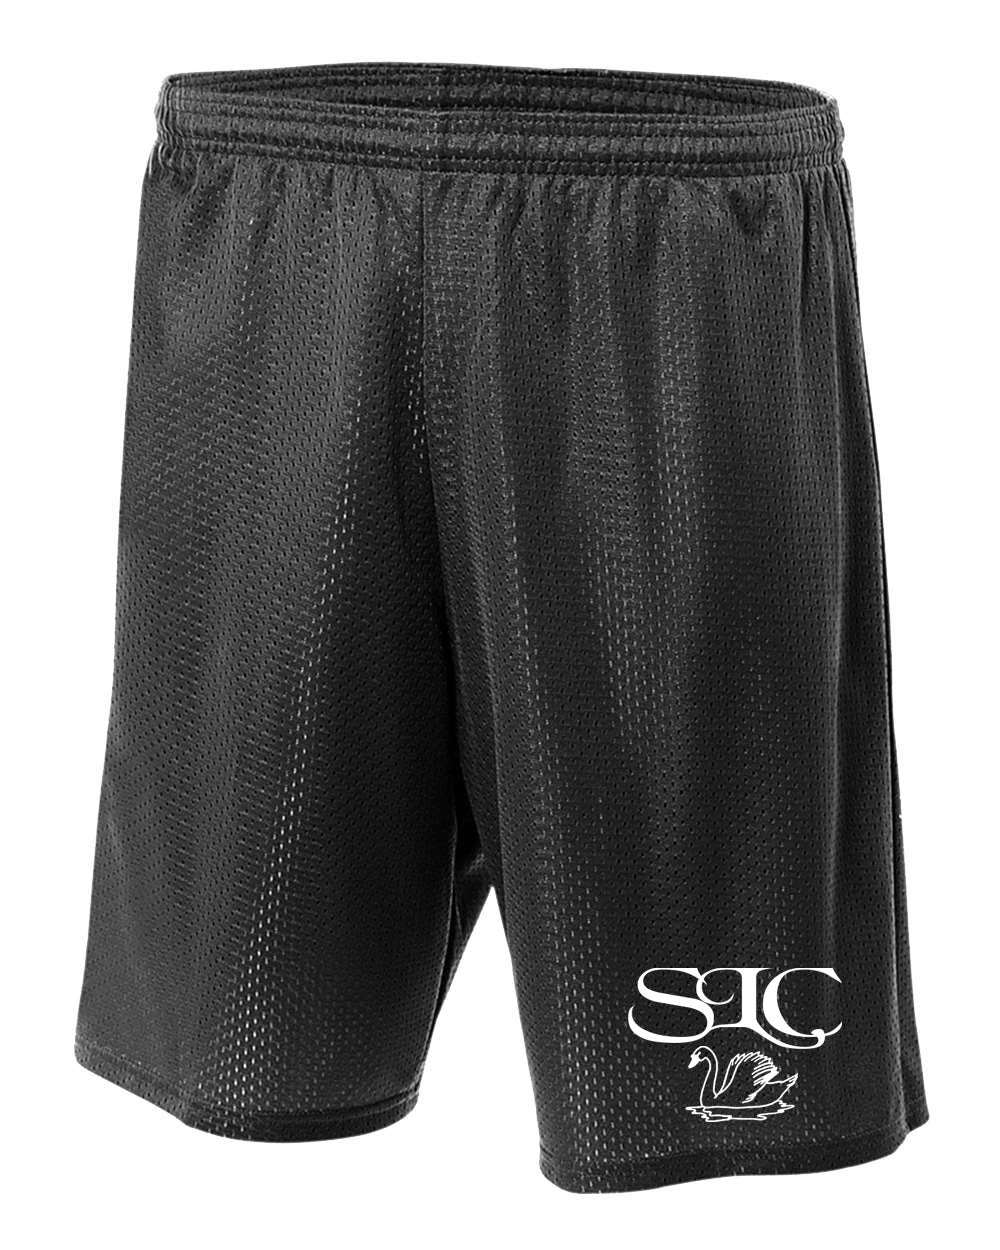 Seneca Lake Design 6 Shorts